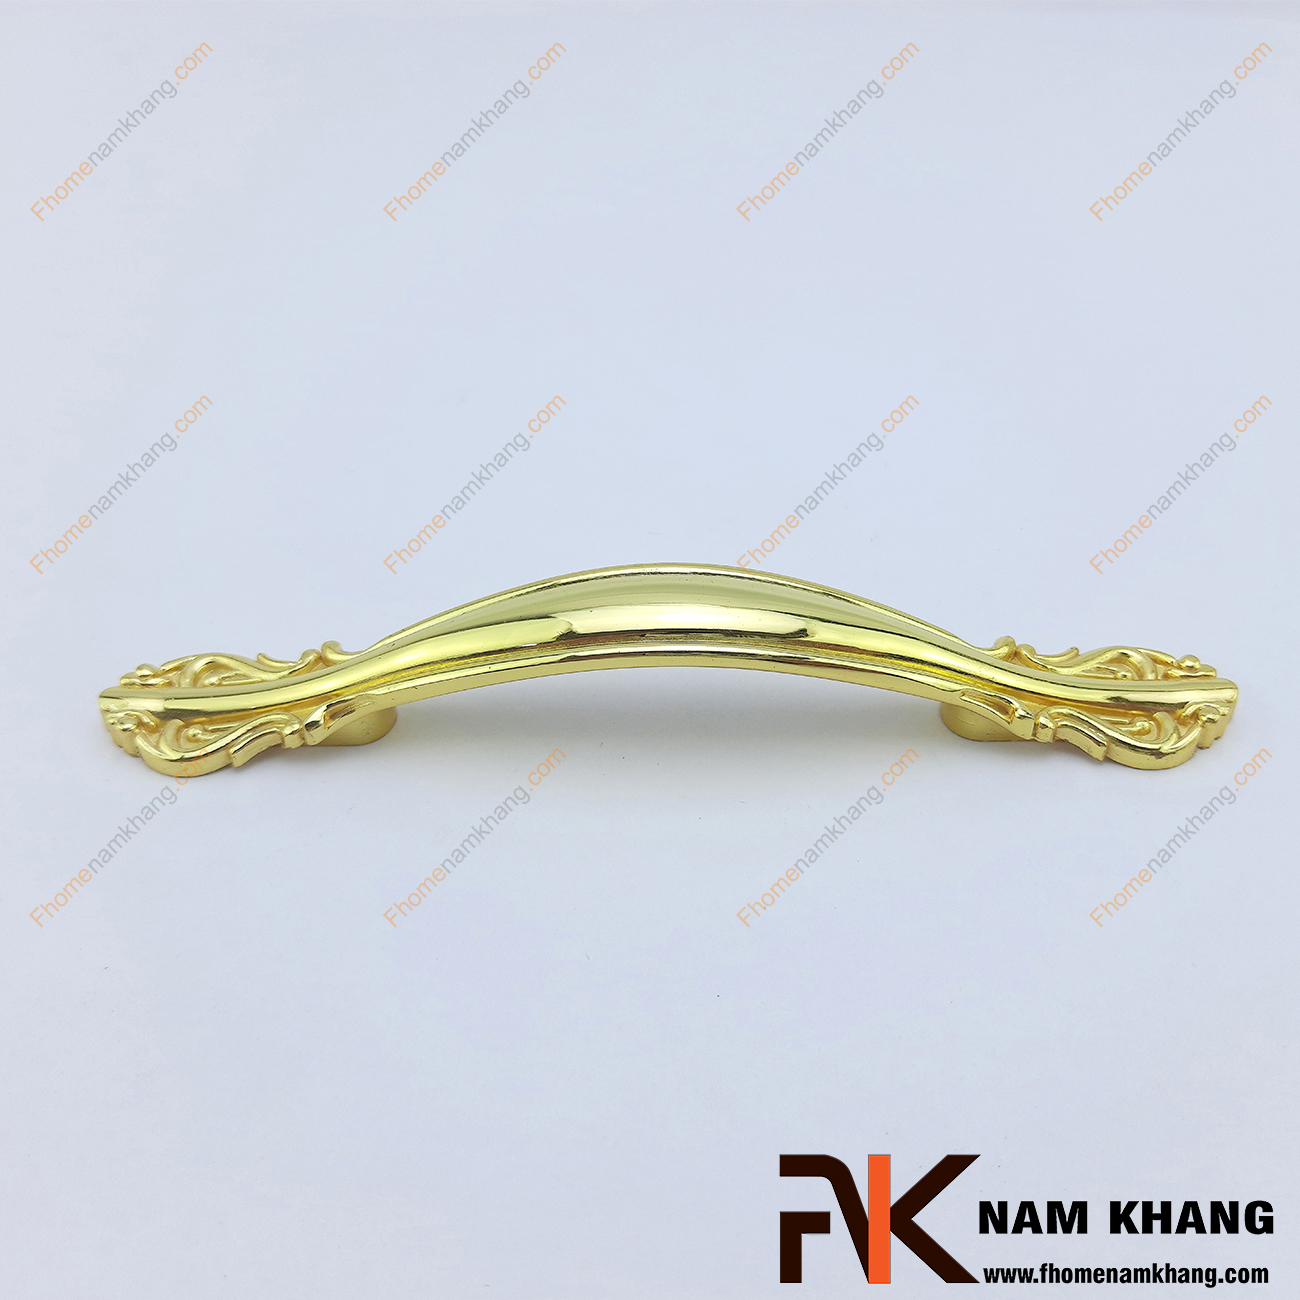 Tay nắm cửa tủ mạ vàng bóng NK0281-V2 là một sản phẩm được gia công hoàn thiện với độ thẩm mỹ cao. Được chế tạo từ vật liệu hợp kim kim loại chắc chắn đảm bảo độ bền cao, chịu được lực va đập.